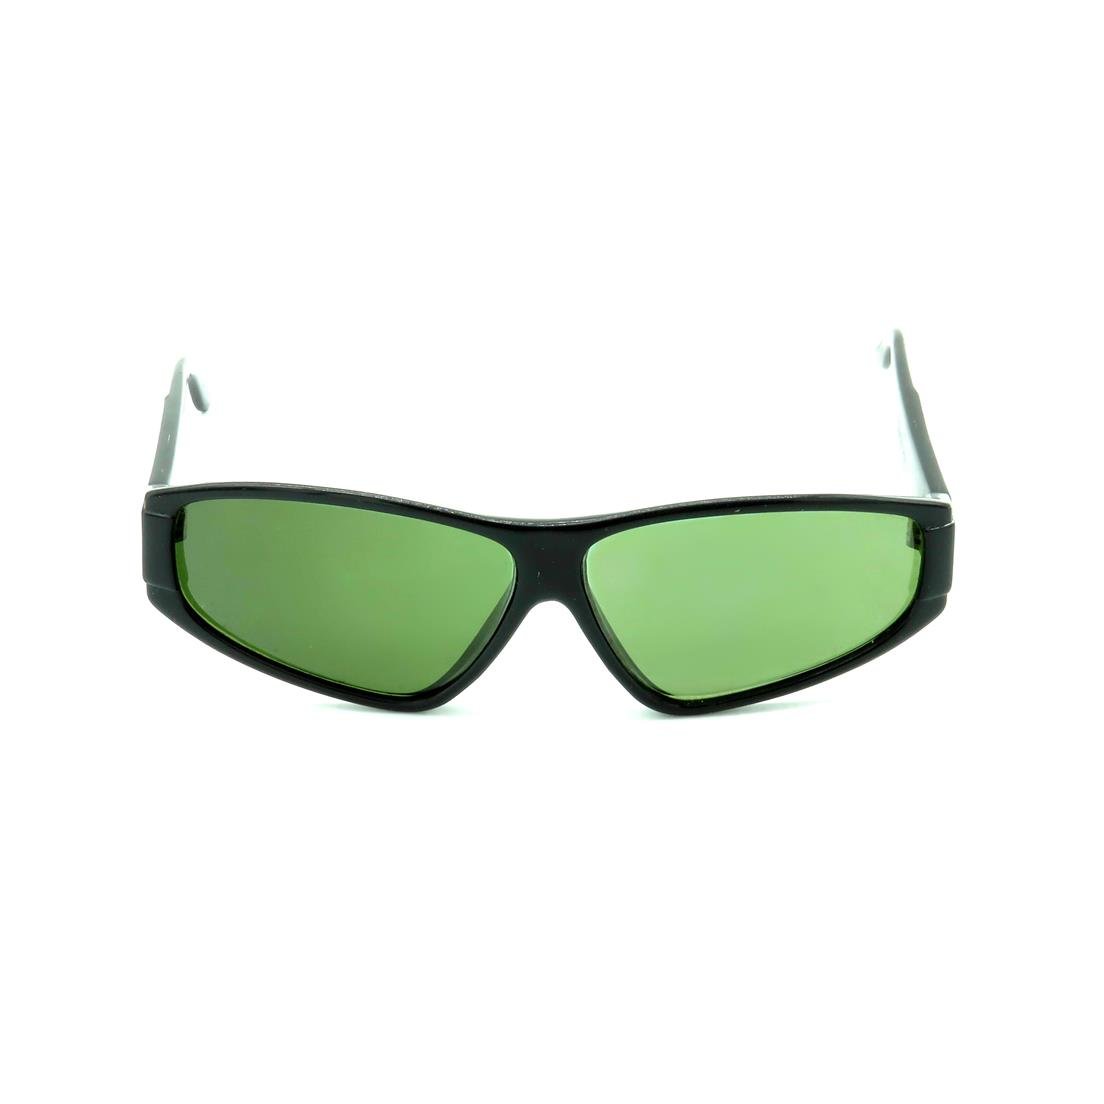 Óculos de Sol Prorider Retrô Preto Brilhante com Lente Fumê Verde - CODE-R8 Preto 2